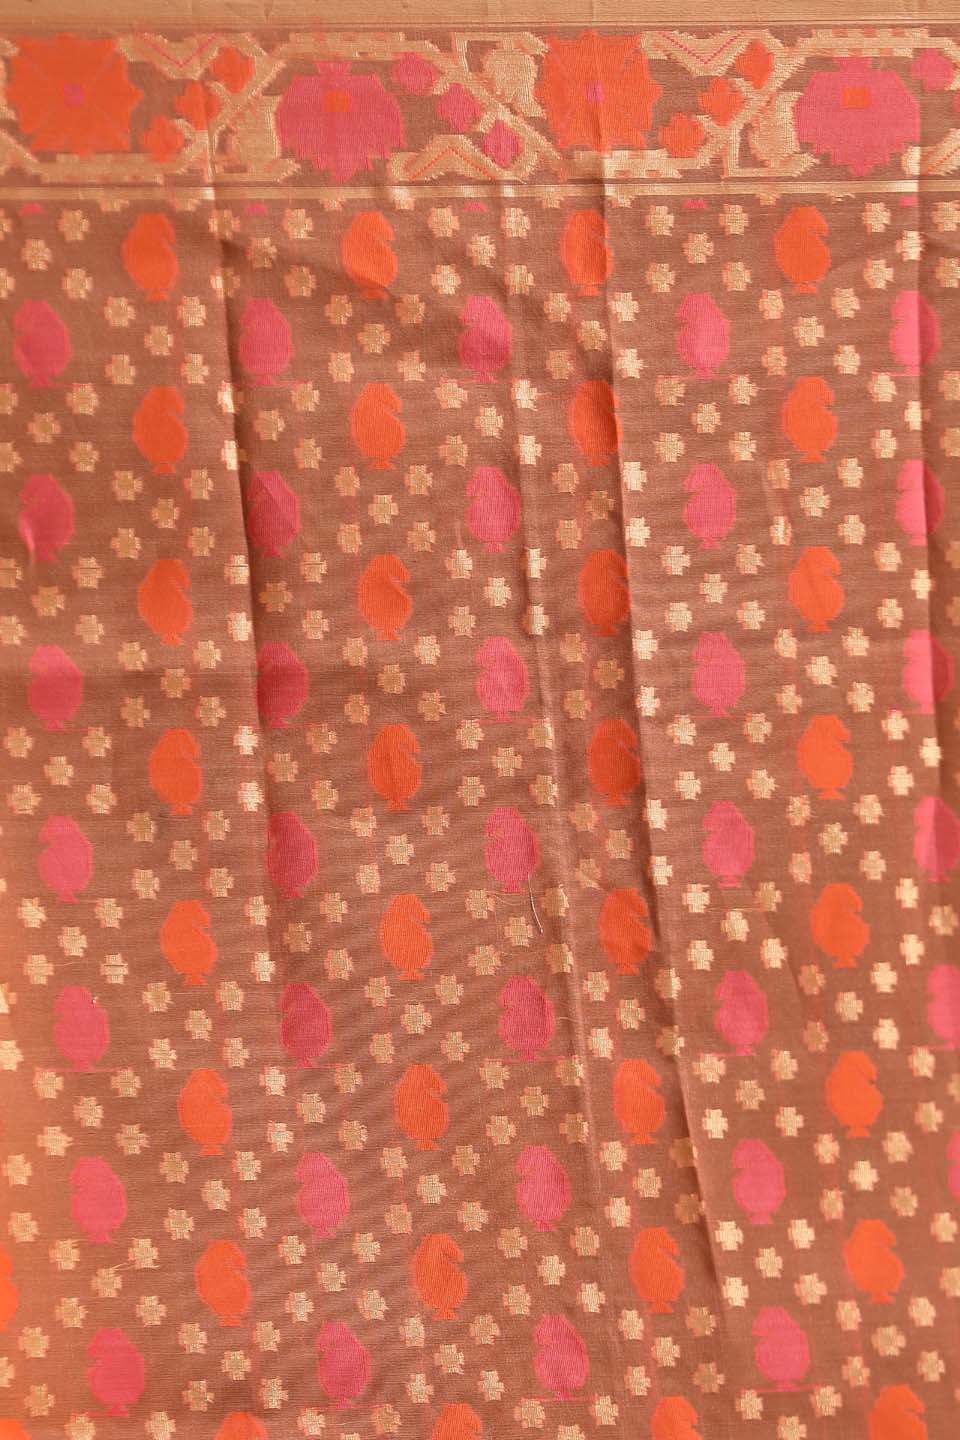 Indethnic Banarasi Orange Ethnic Motifs Woven Design Traditional Wear Saree - Saree Detail View